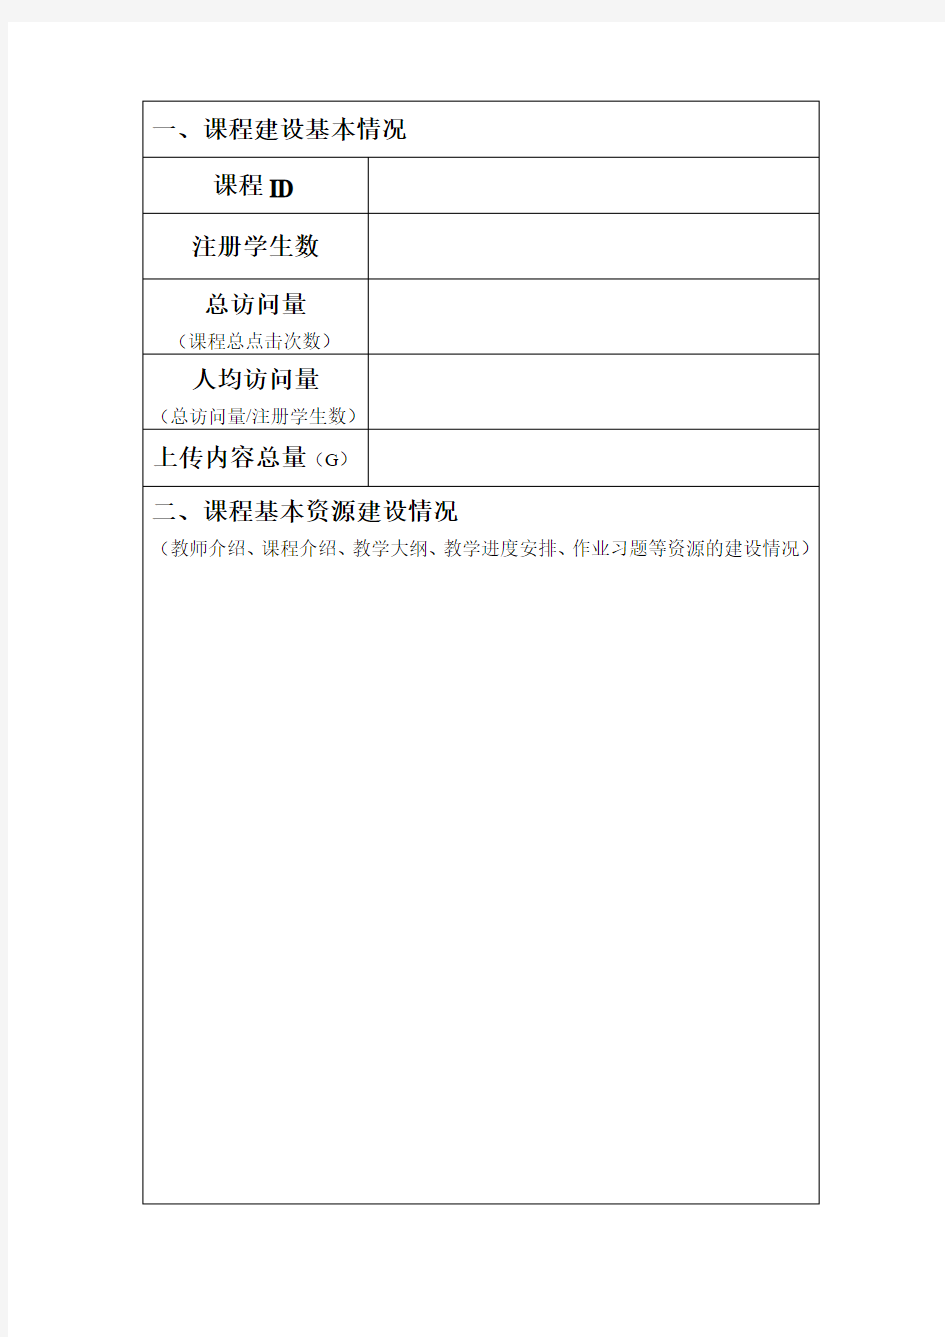 北京邮电大学爱课堂教学平台课程资源建设项目结题报告